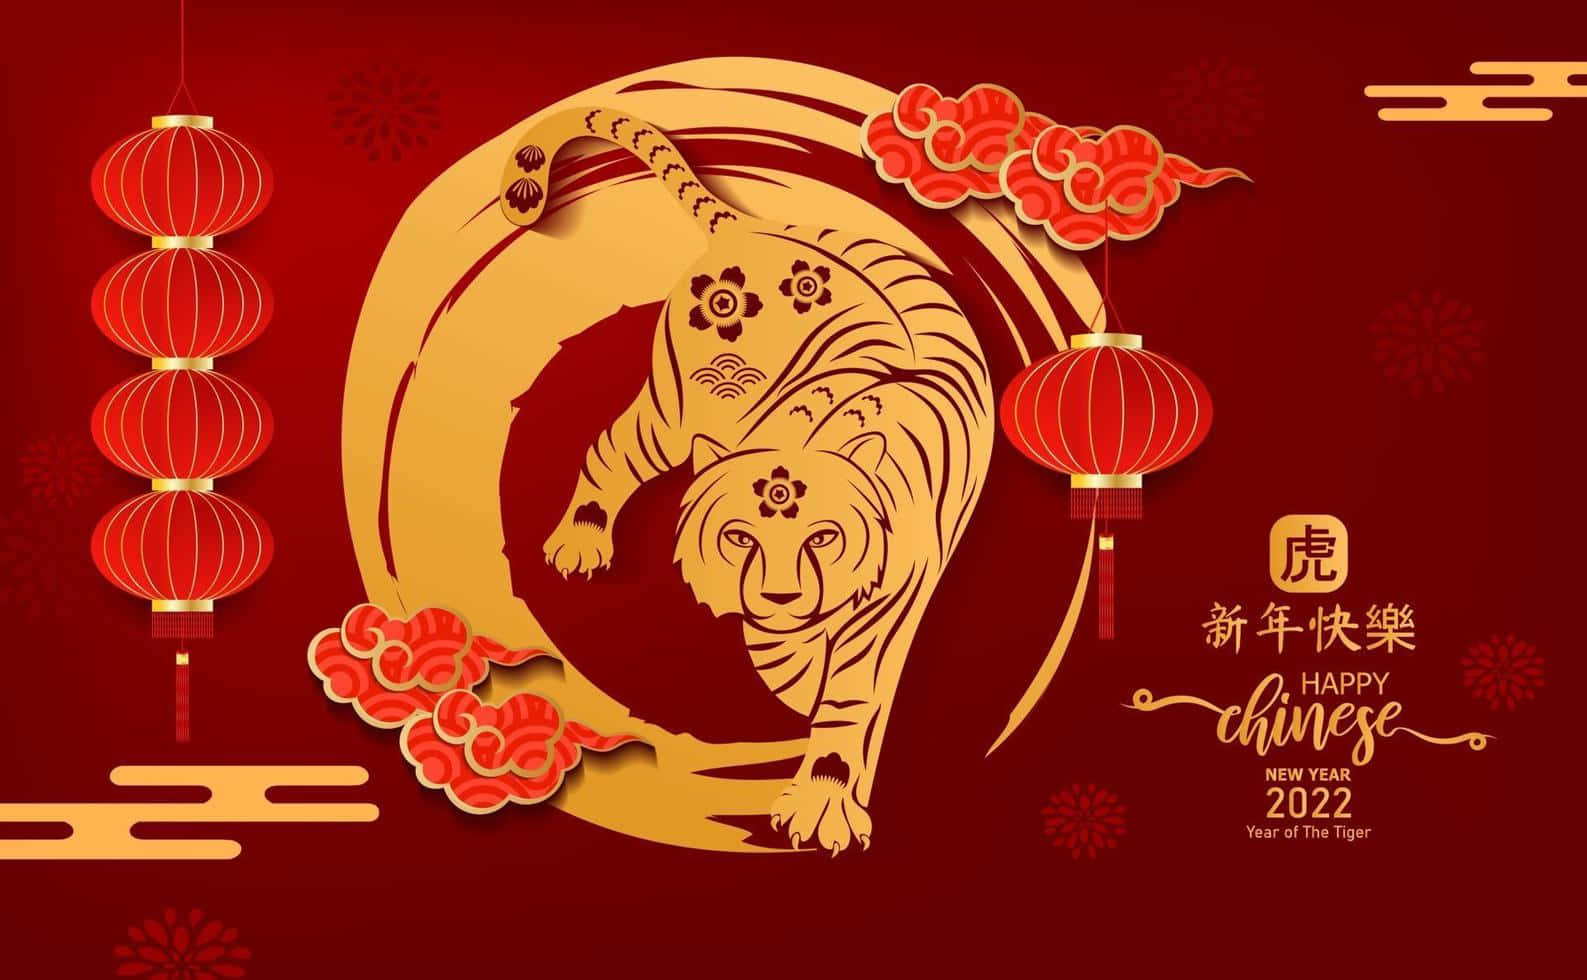 Fejren Glædelig Kinesisk Nytår 2022 Med En Flot Computer- Eller Mobilbaggrund.